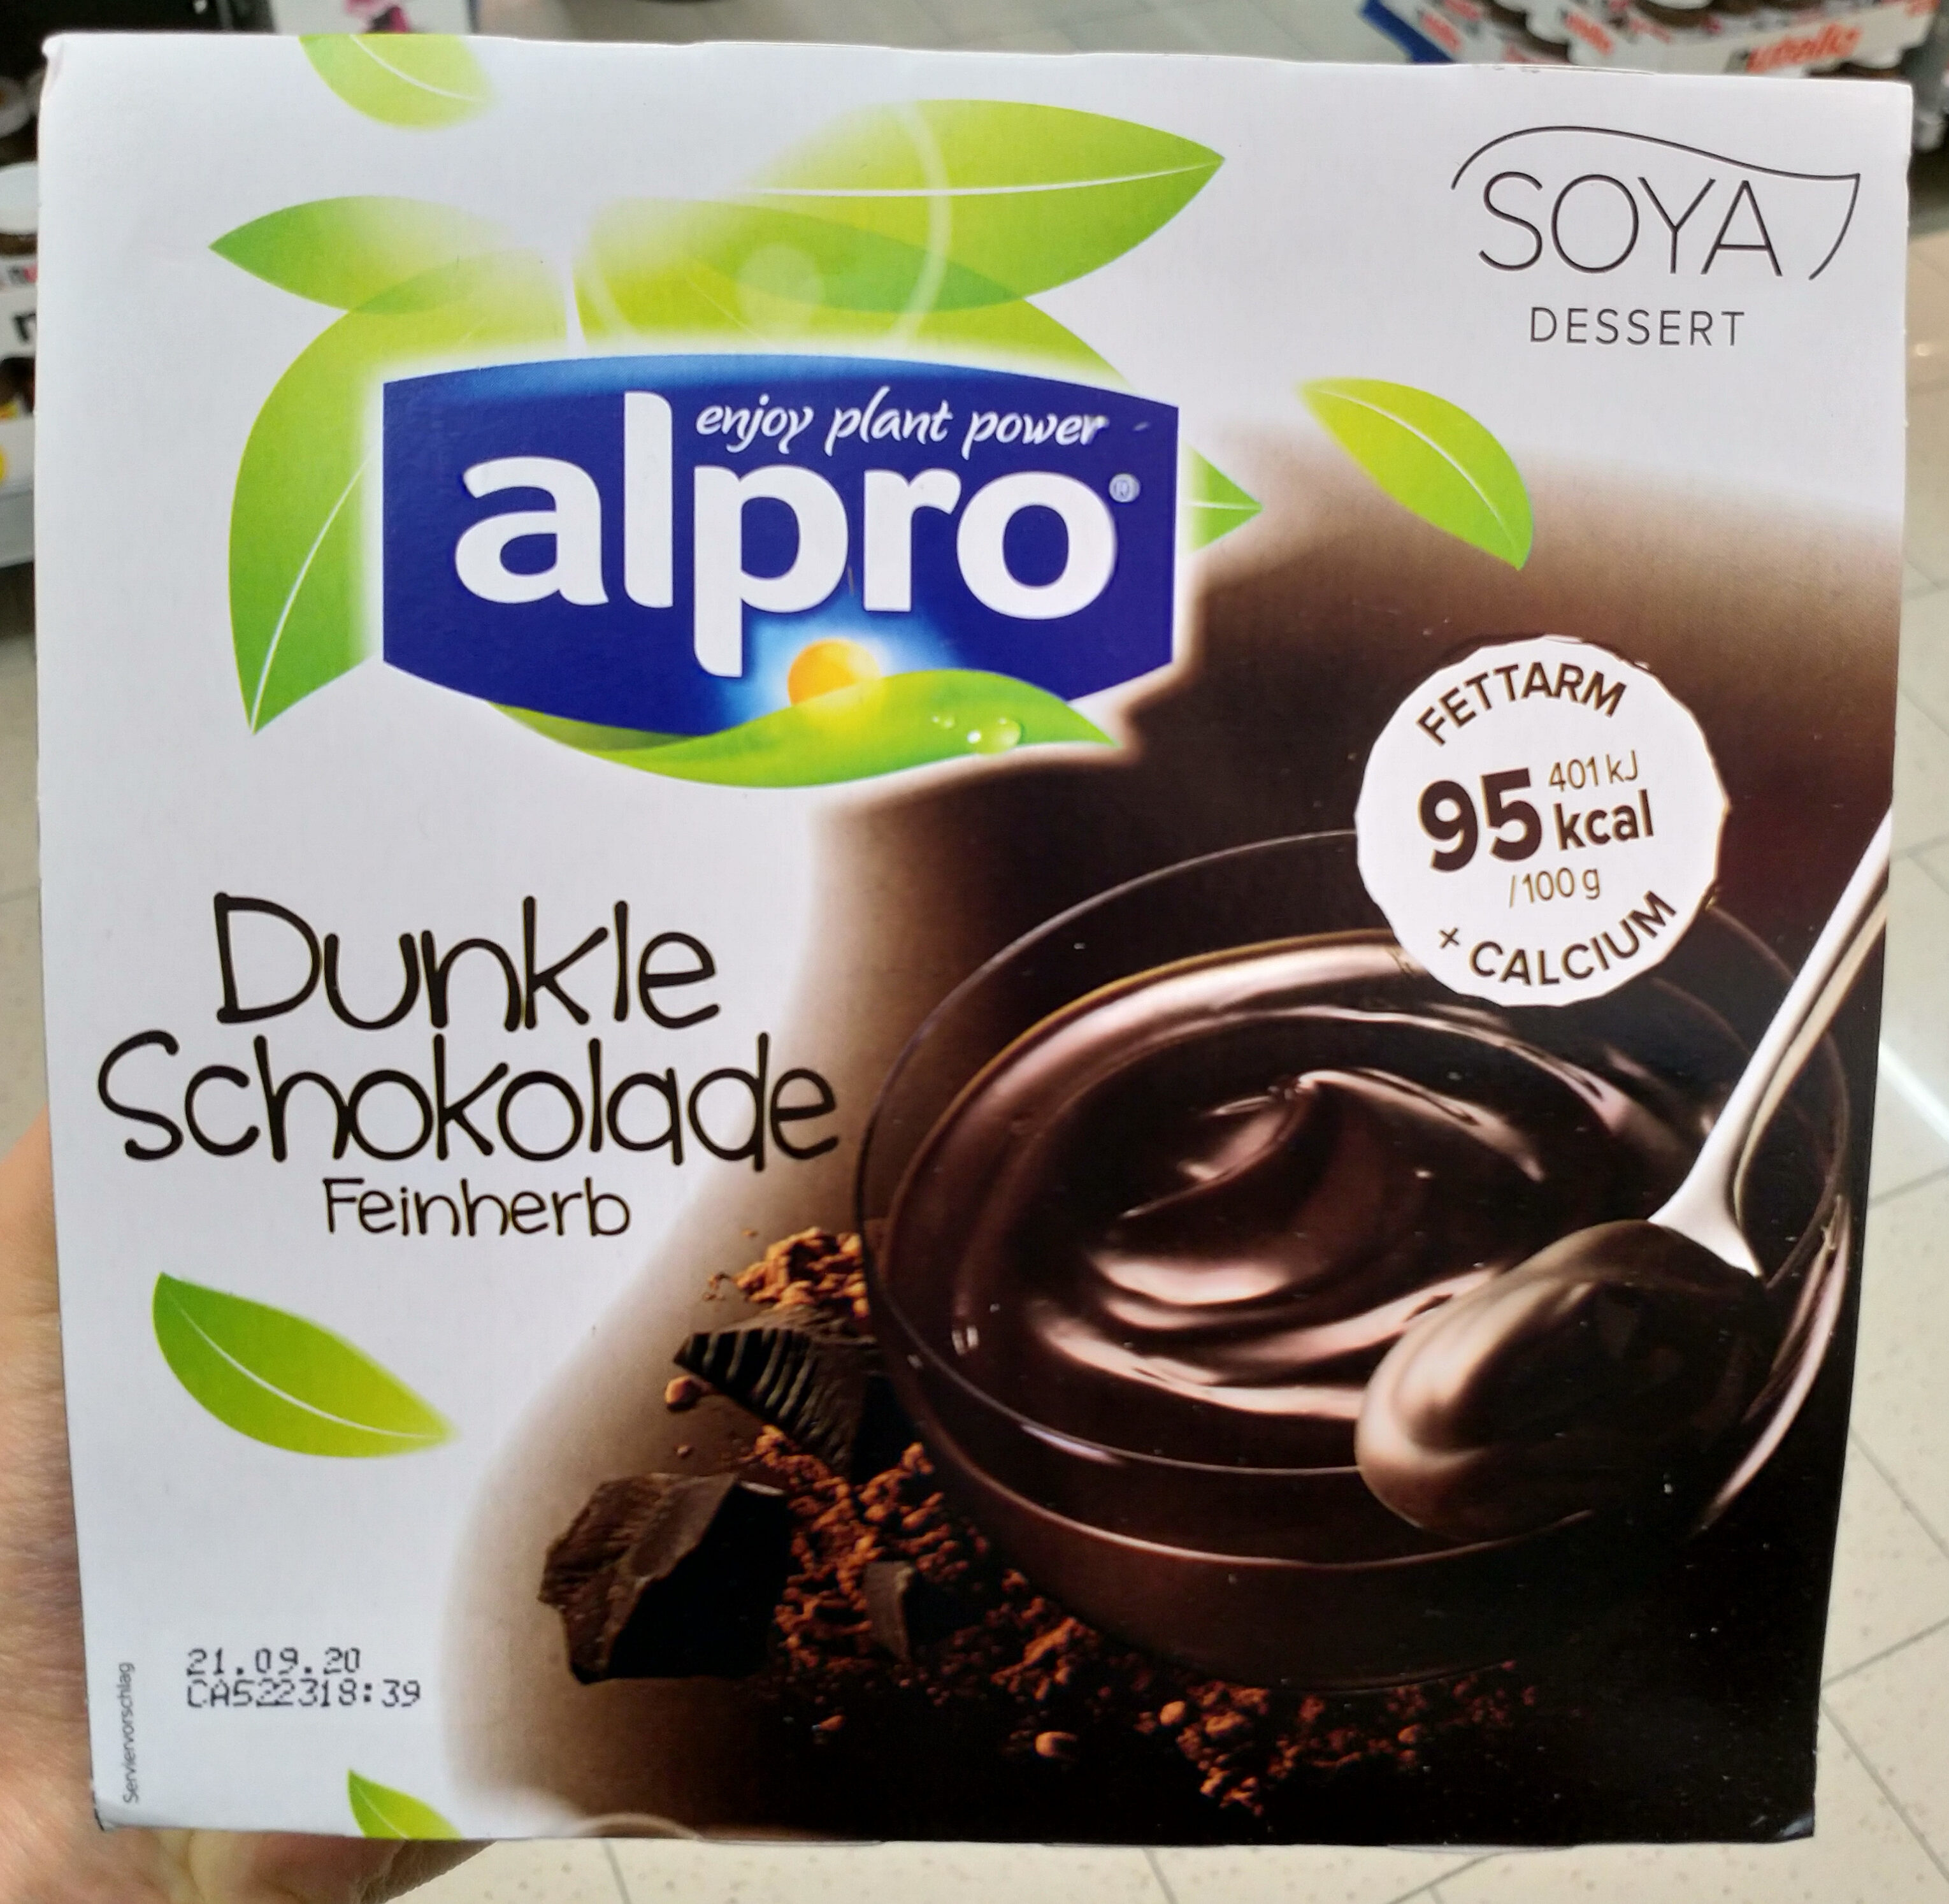 Soya Dessert dunkel Schokolade - Produkt